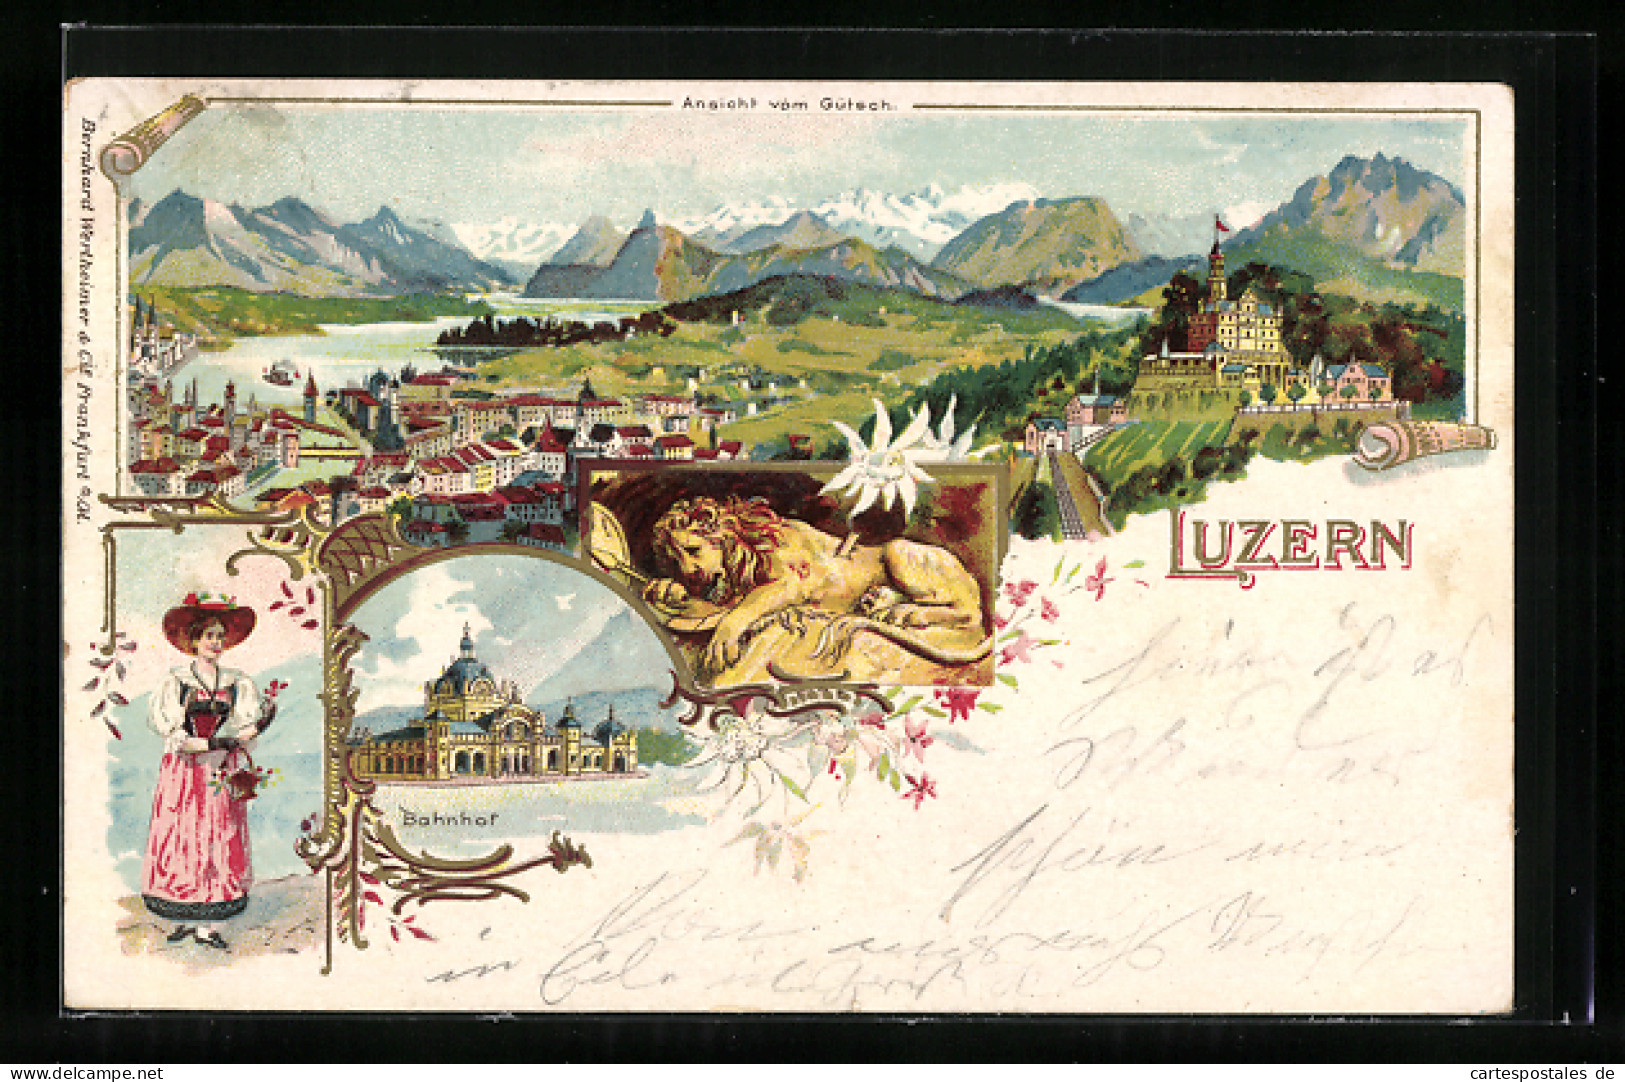 Lithographie Luzern, Bahnhof, Ansicht Vom Gütsch  - Lucerne